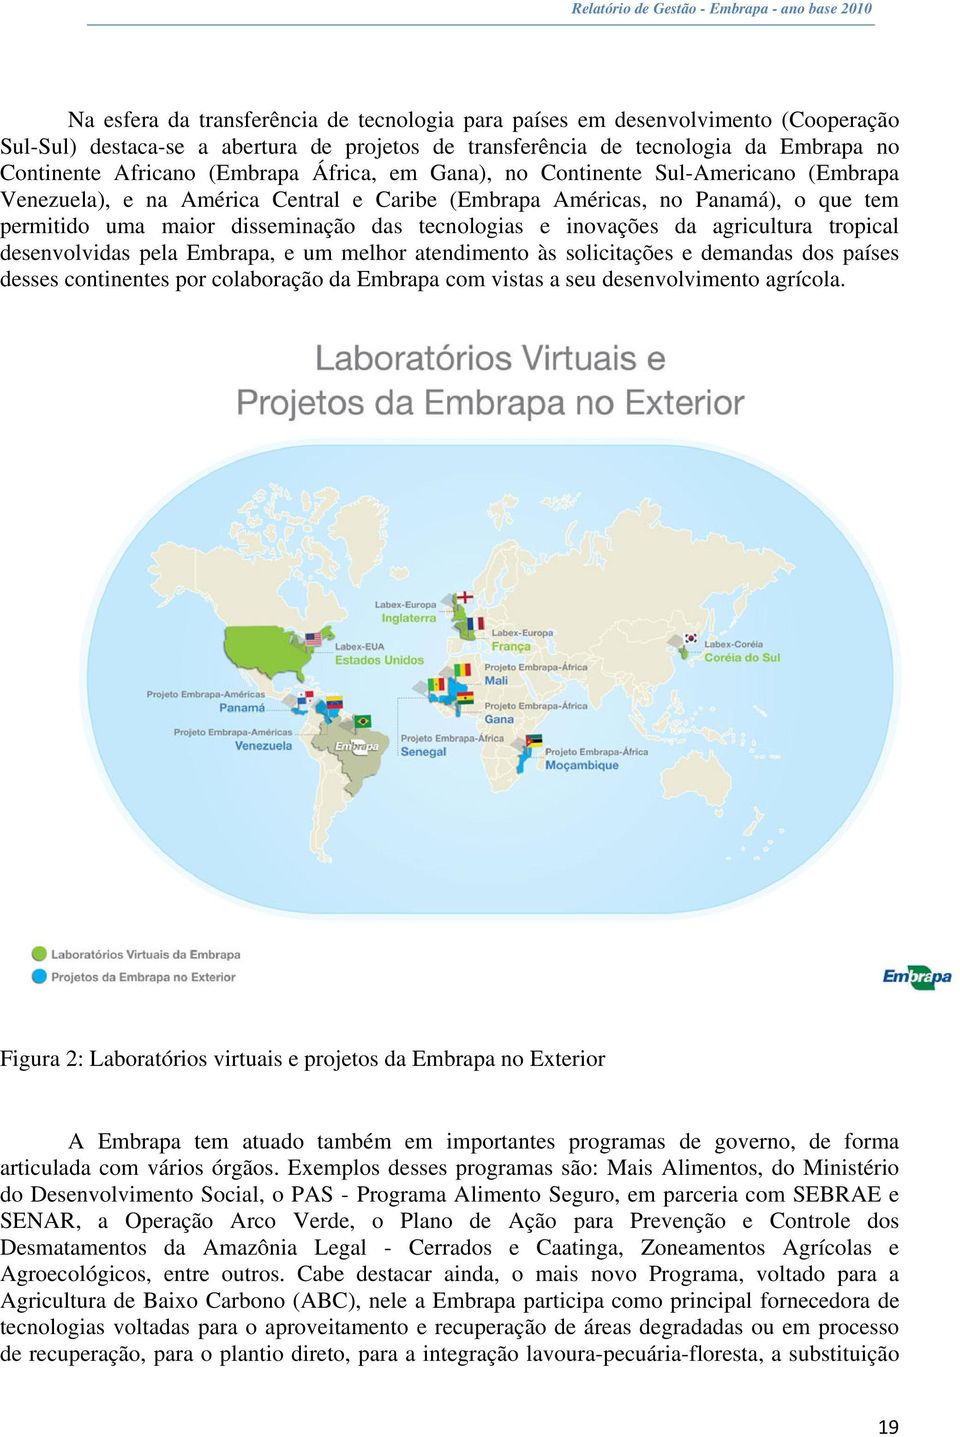 inovações da agricultura tropical desenvolvidas pela Embrapa, e um melhor atendimento às solicitações e demandas dos países desses continentes por colaboração da Embrapa com vistas a seu